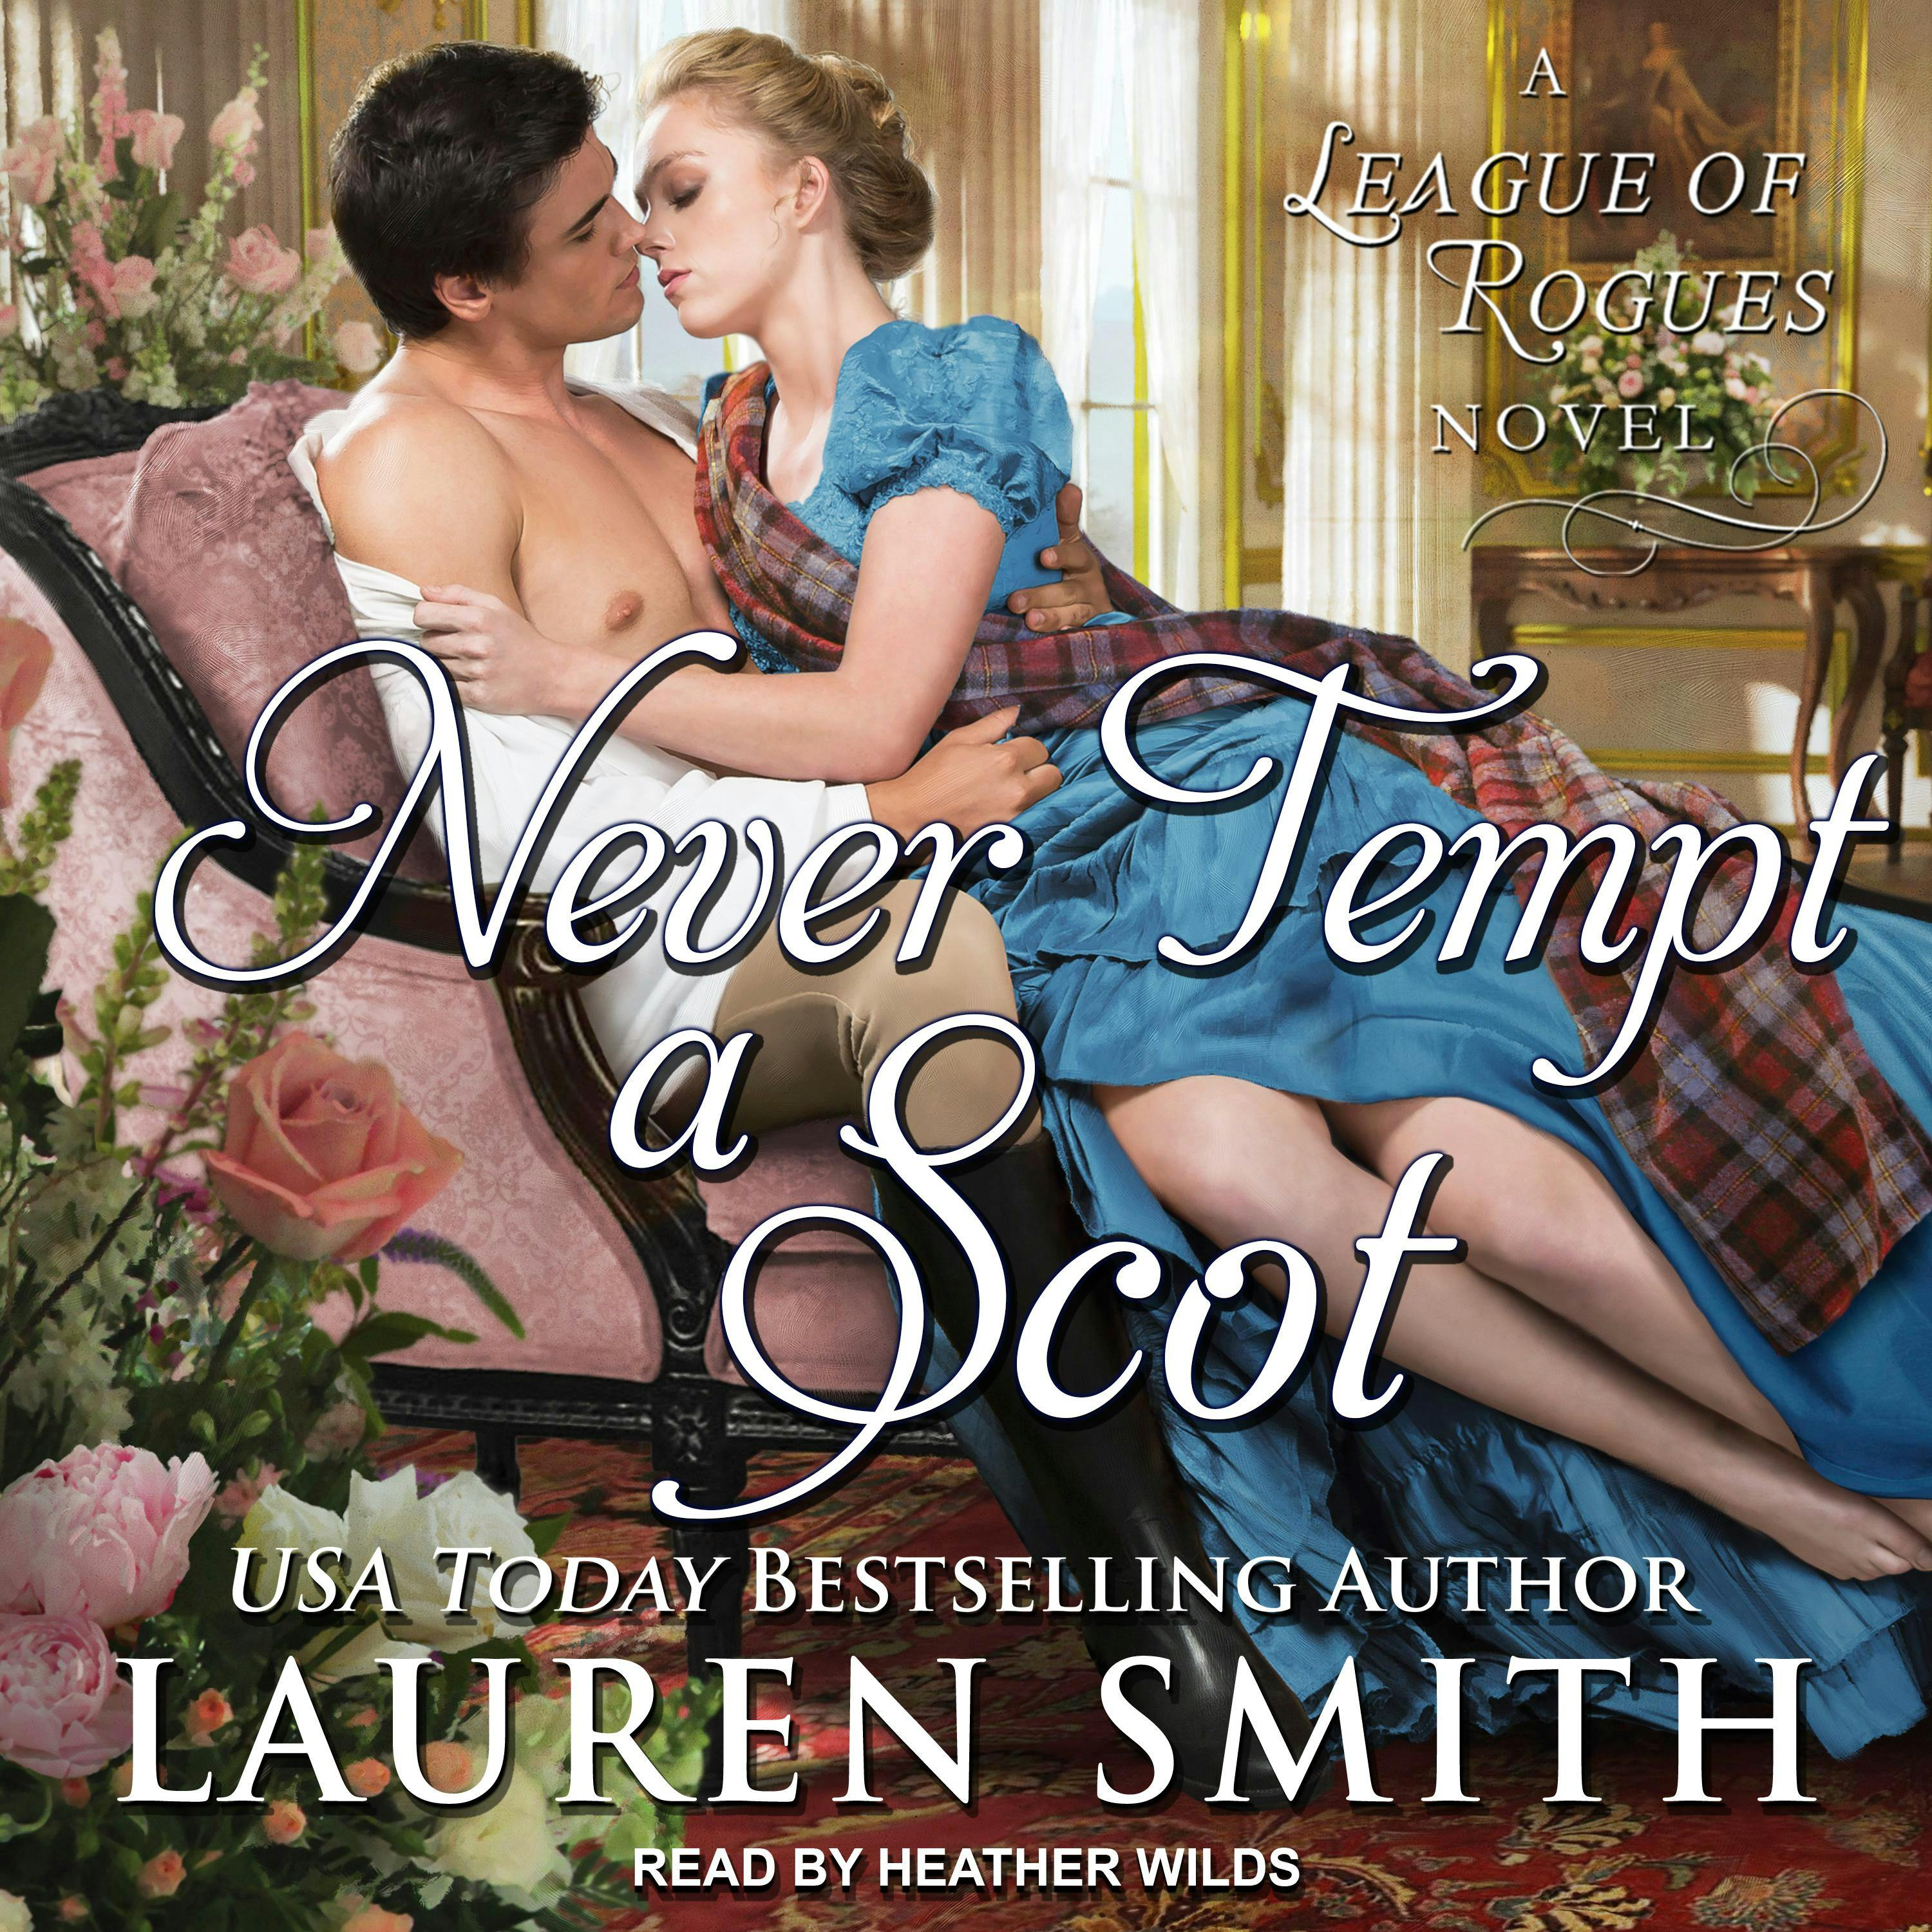 Never Tempt a Scot - Lauren Smith